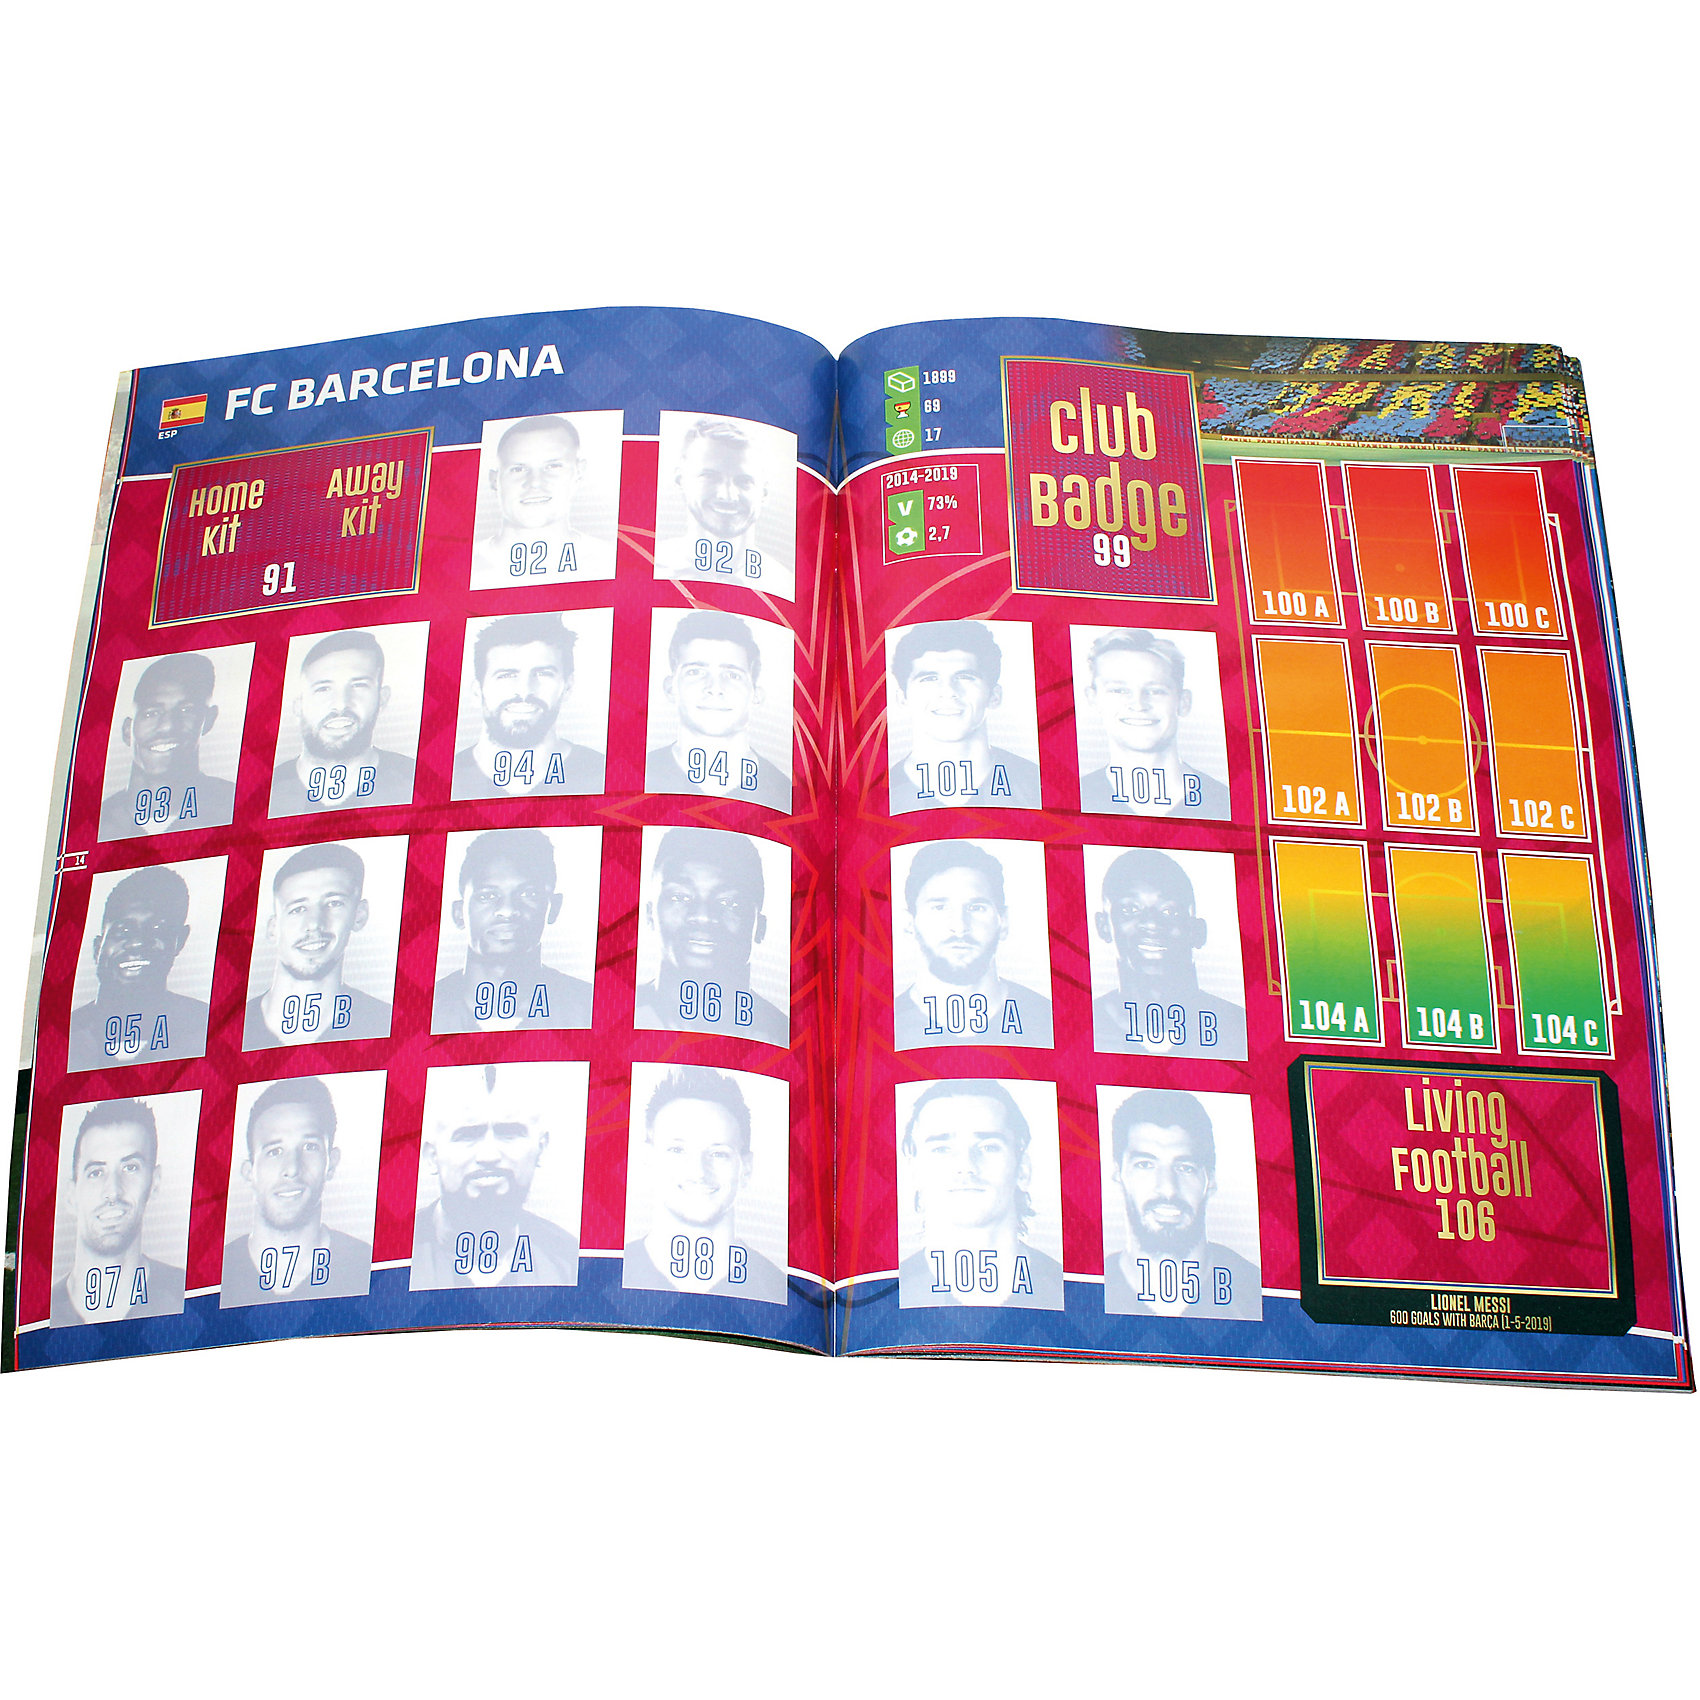 фото Альбом Panini FIFA 365 - 2020 и блистер с наклейками, 60 пакетиков в блистере